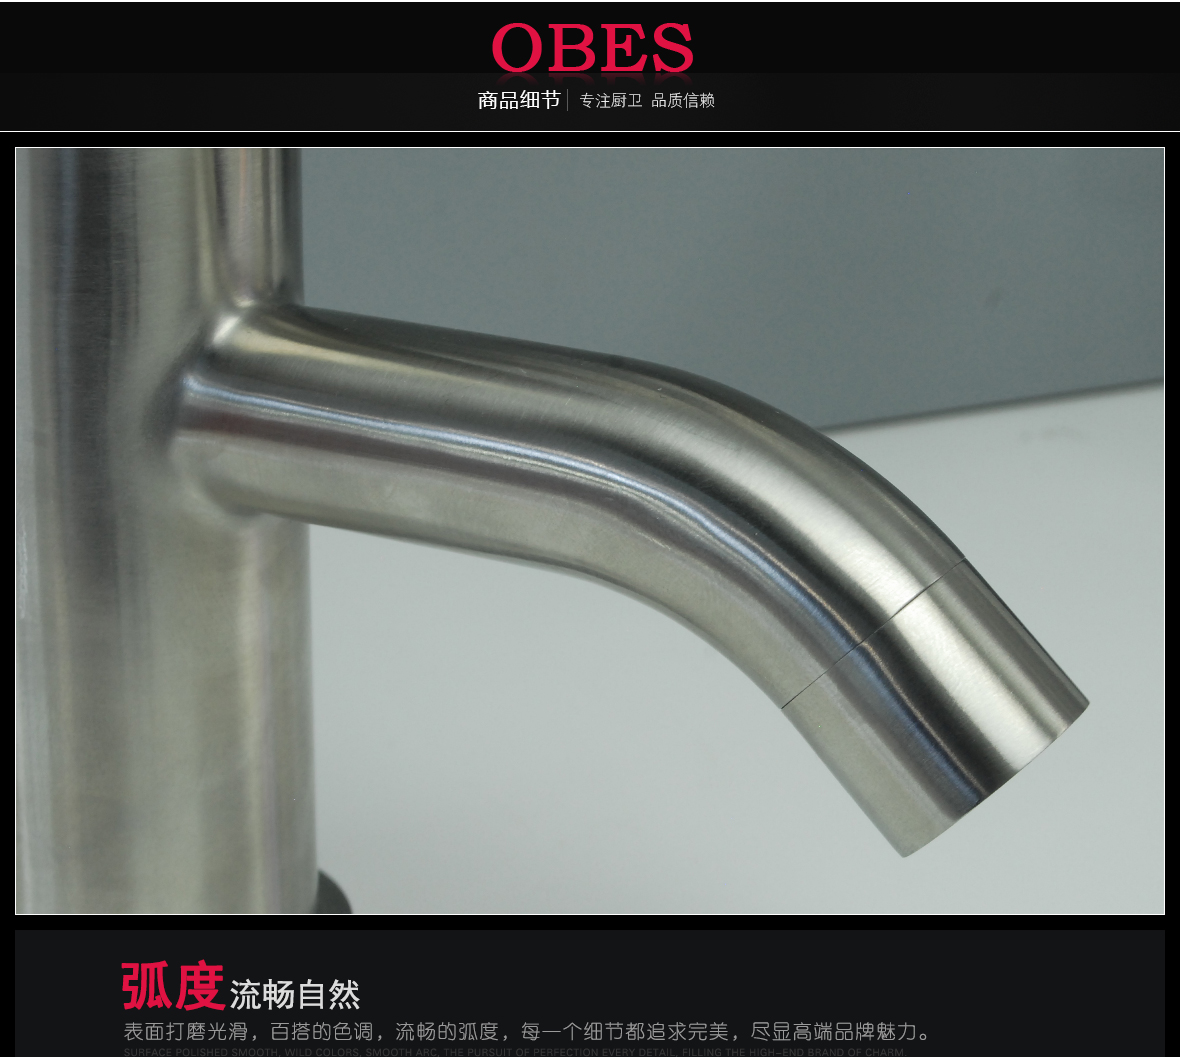 欧贝斯 OBS-801B/250型号 龙头 不锈钢材质 现代简约